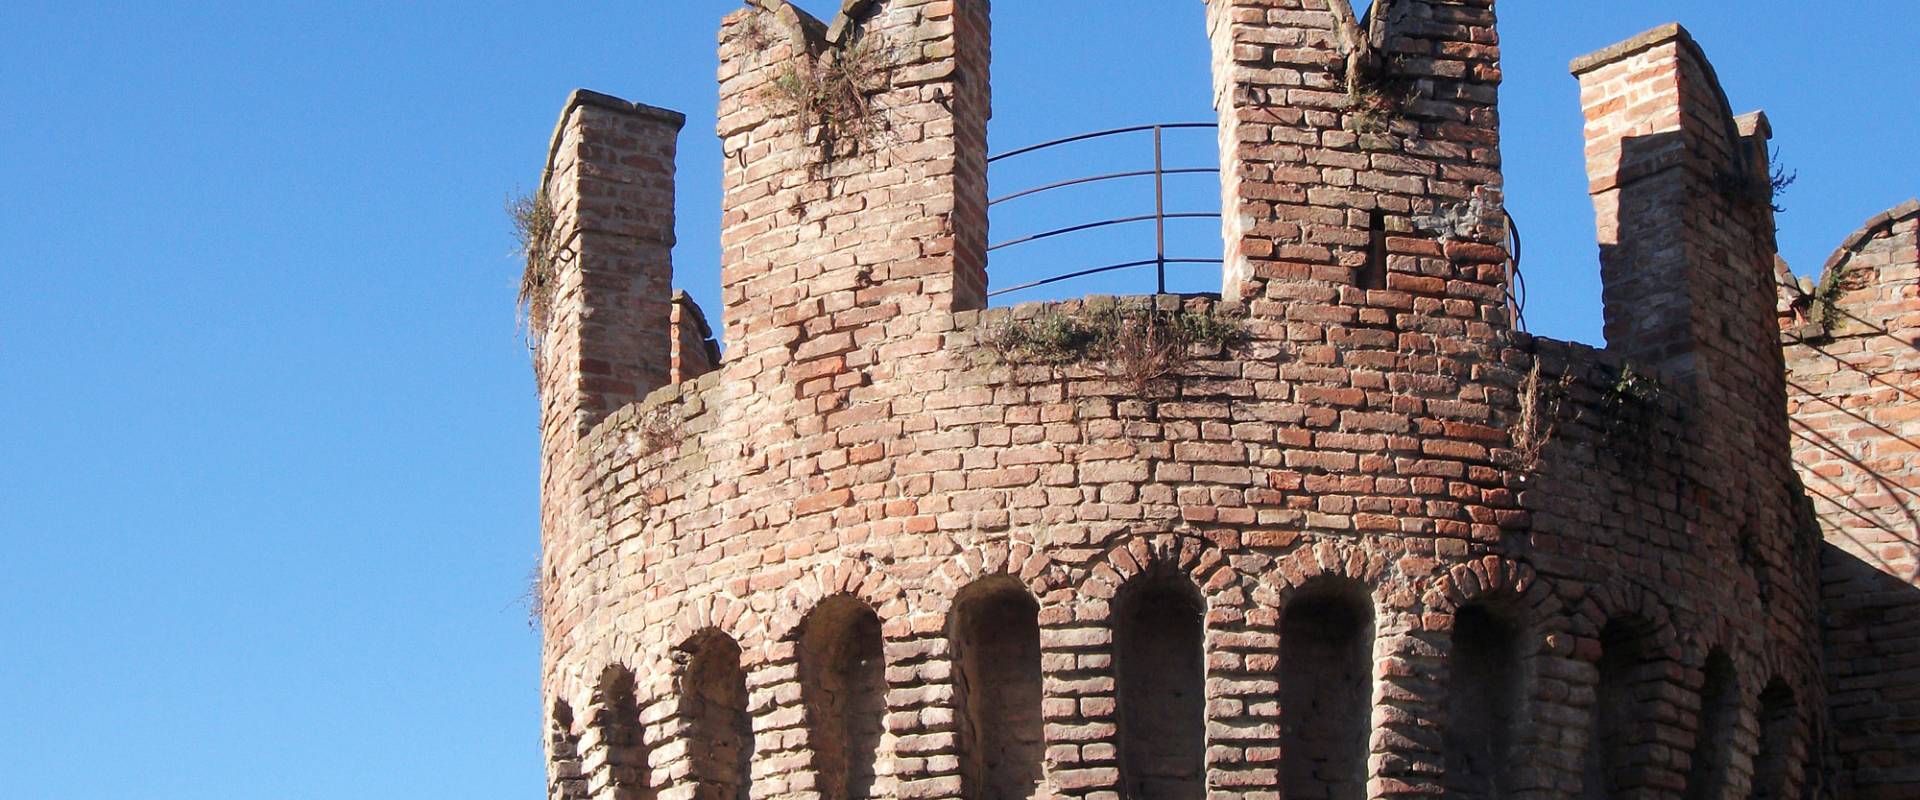 Rocca Sanvitale - Torre foto di Micronautilus